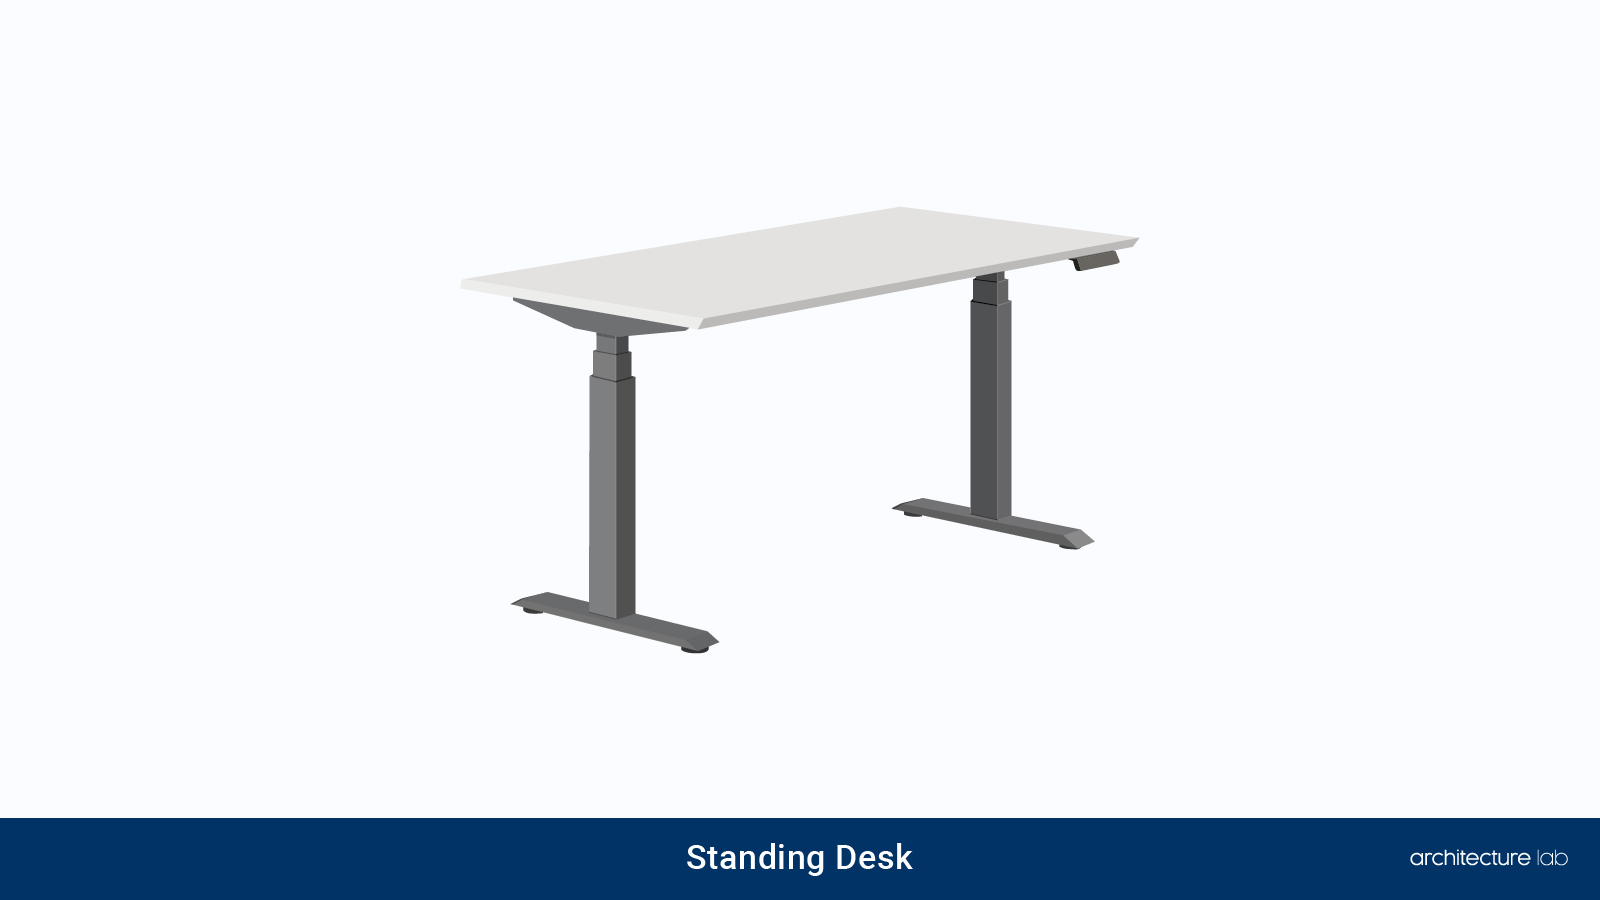 4. Standing desk